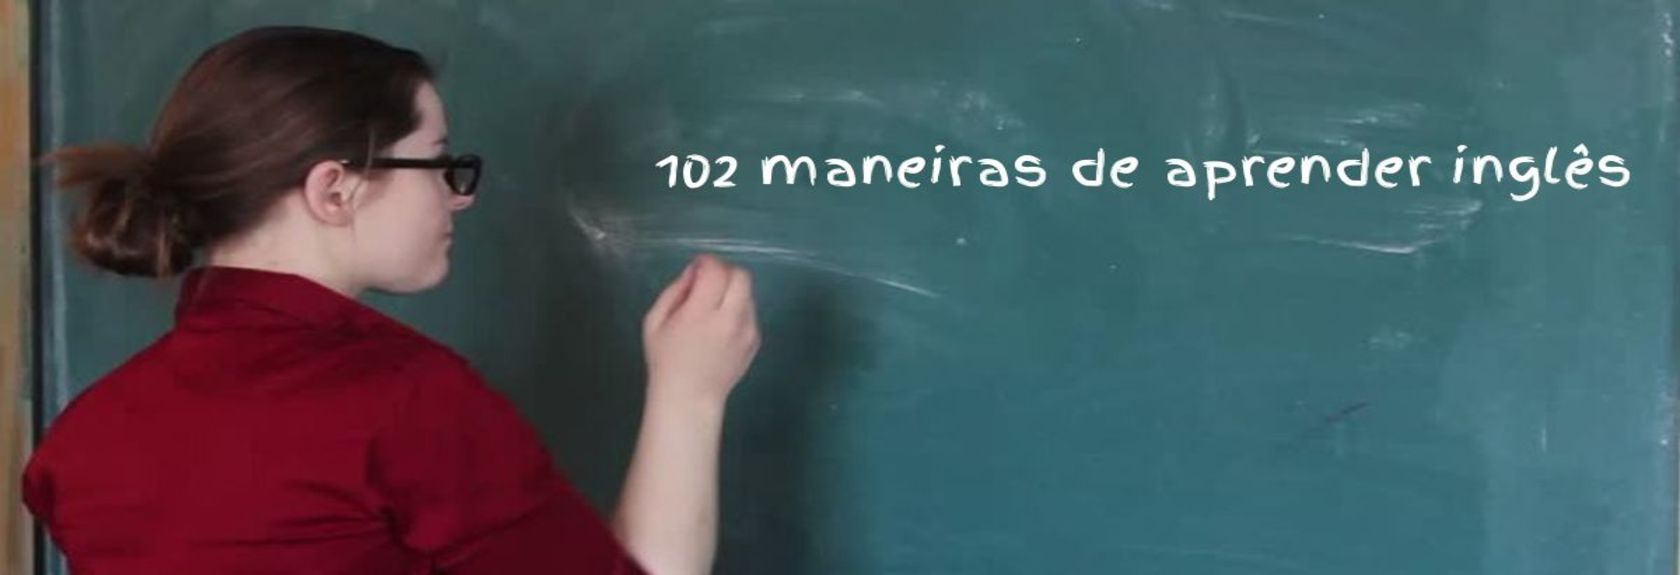 102 maneiras de aprender inglês